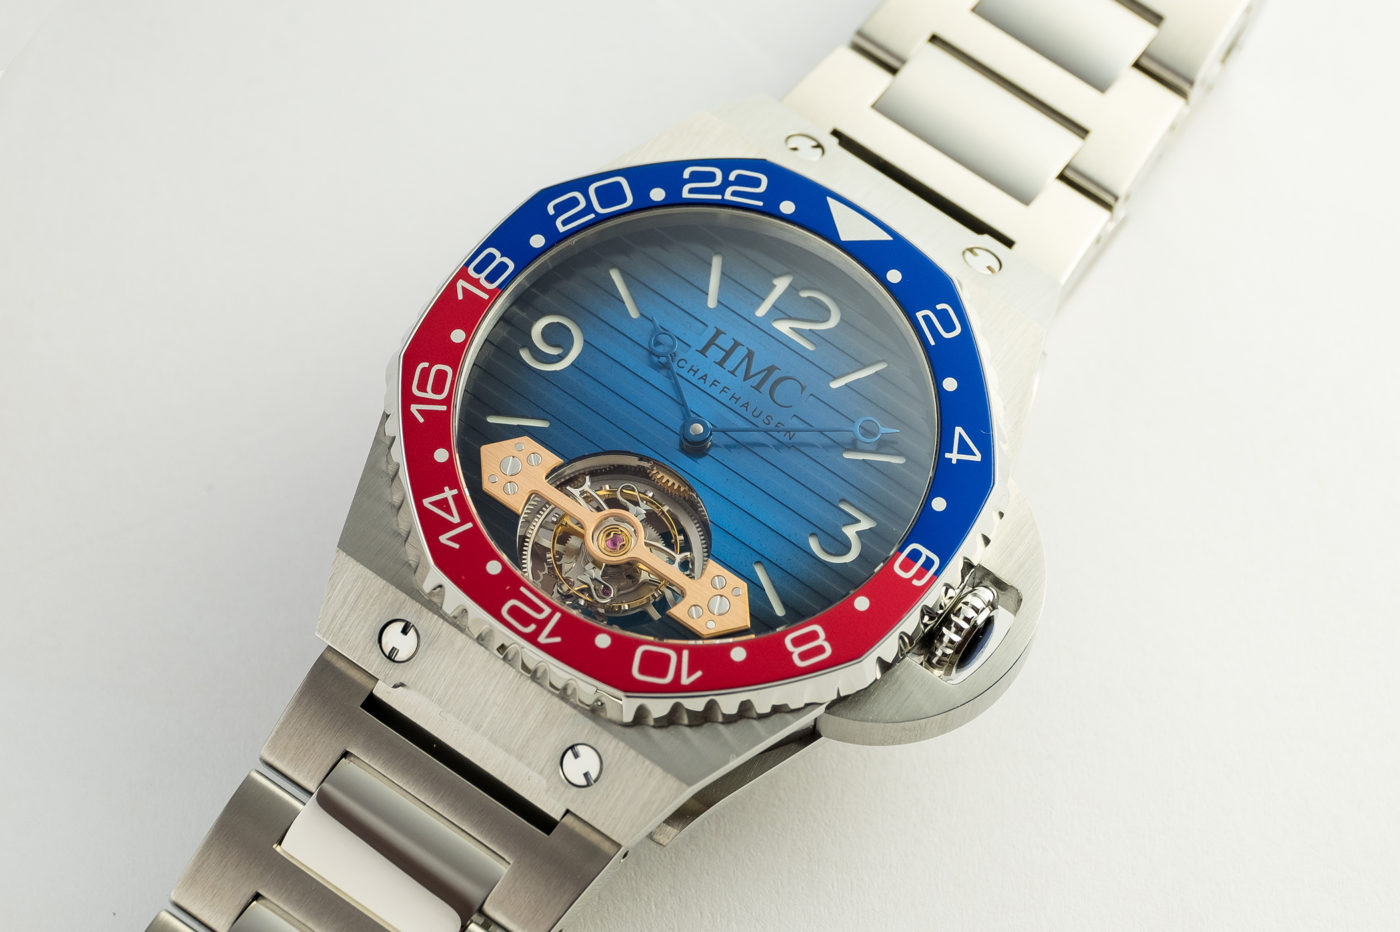 H.Moser & Cie. Swiss Icons Watch – zegarkowy hołd z przymrużeniem oka [video, dostępność, cena]